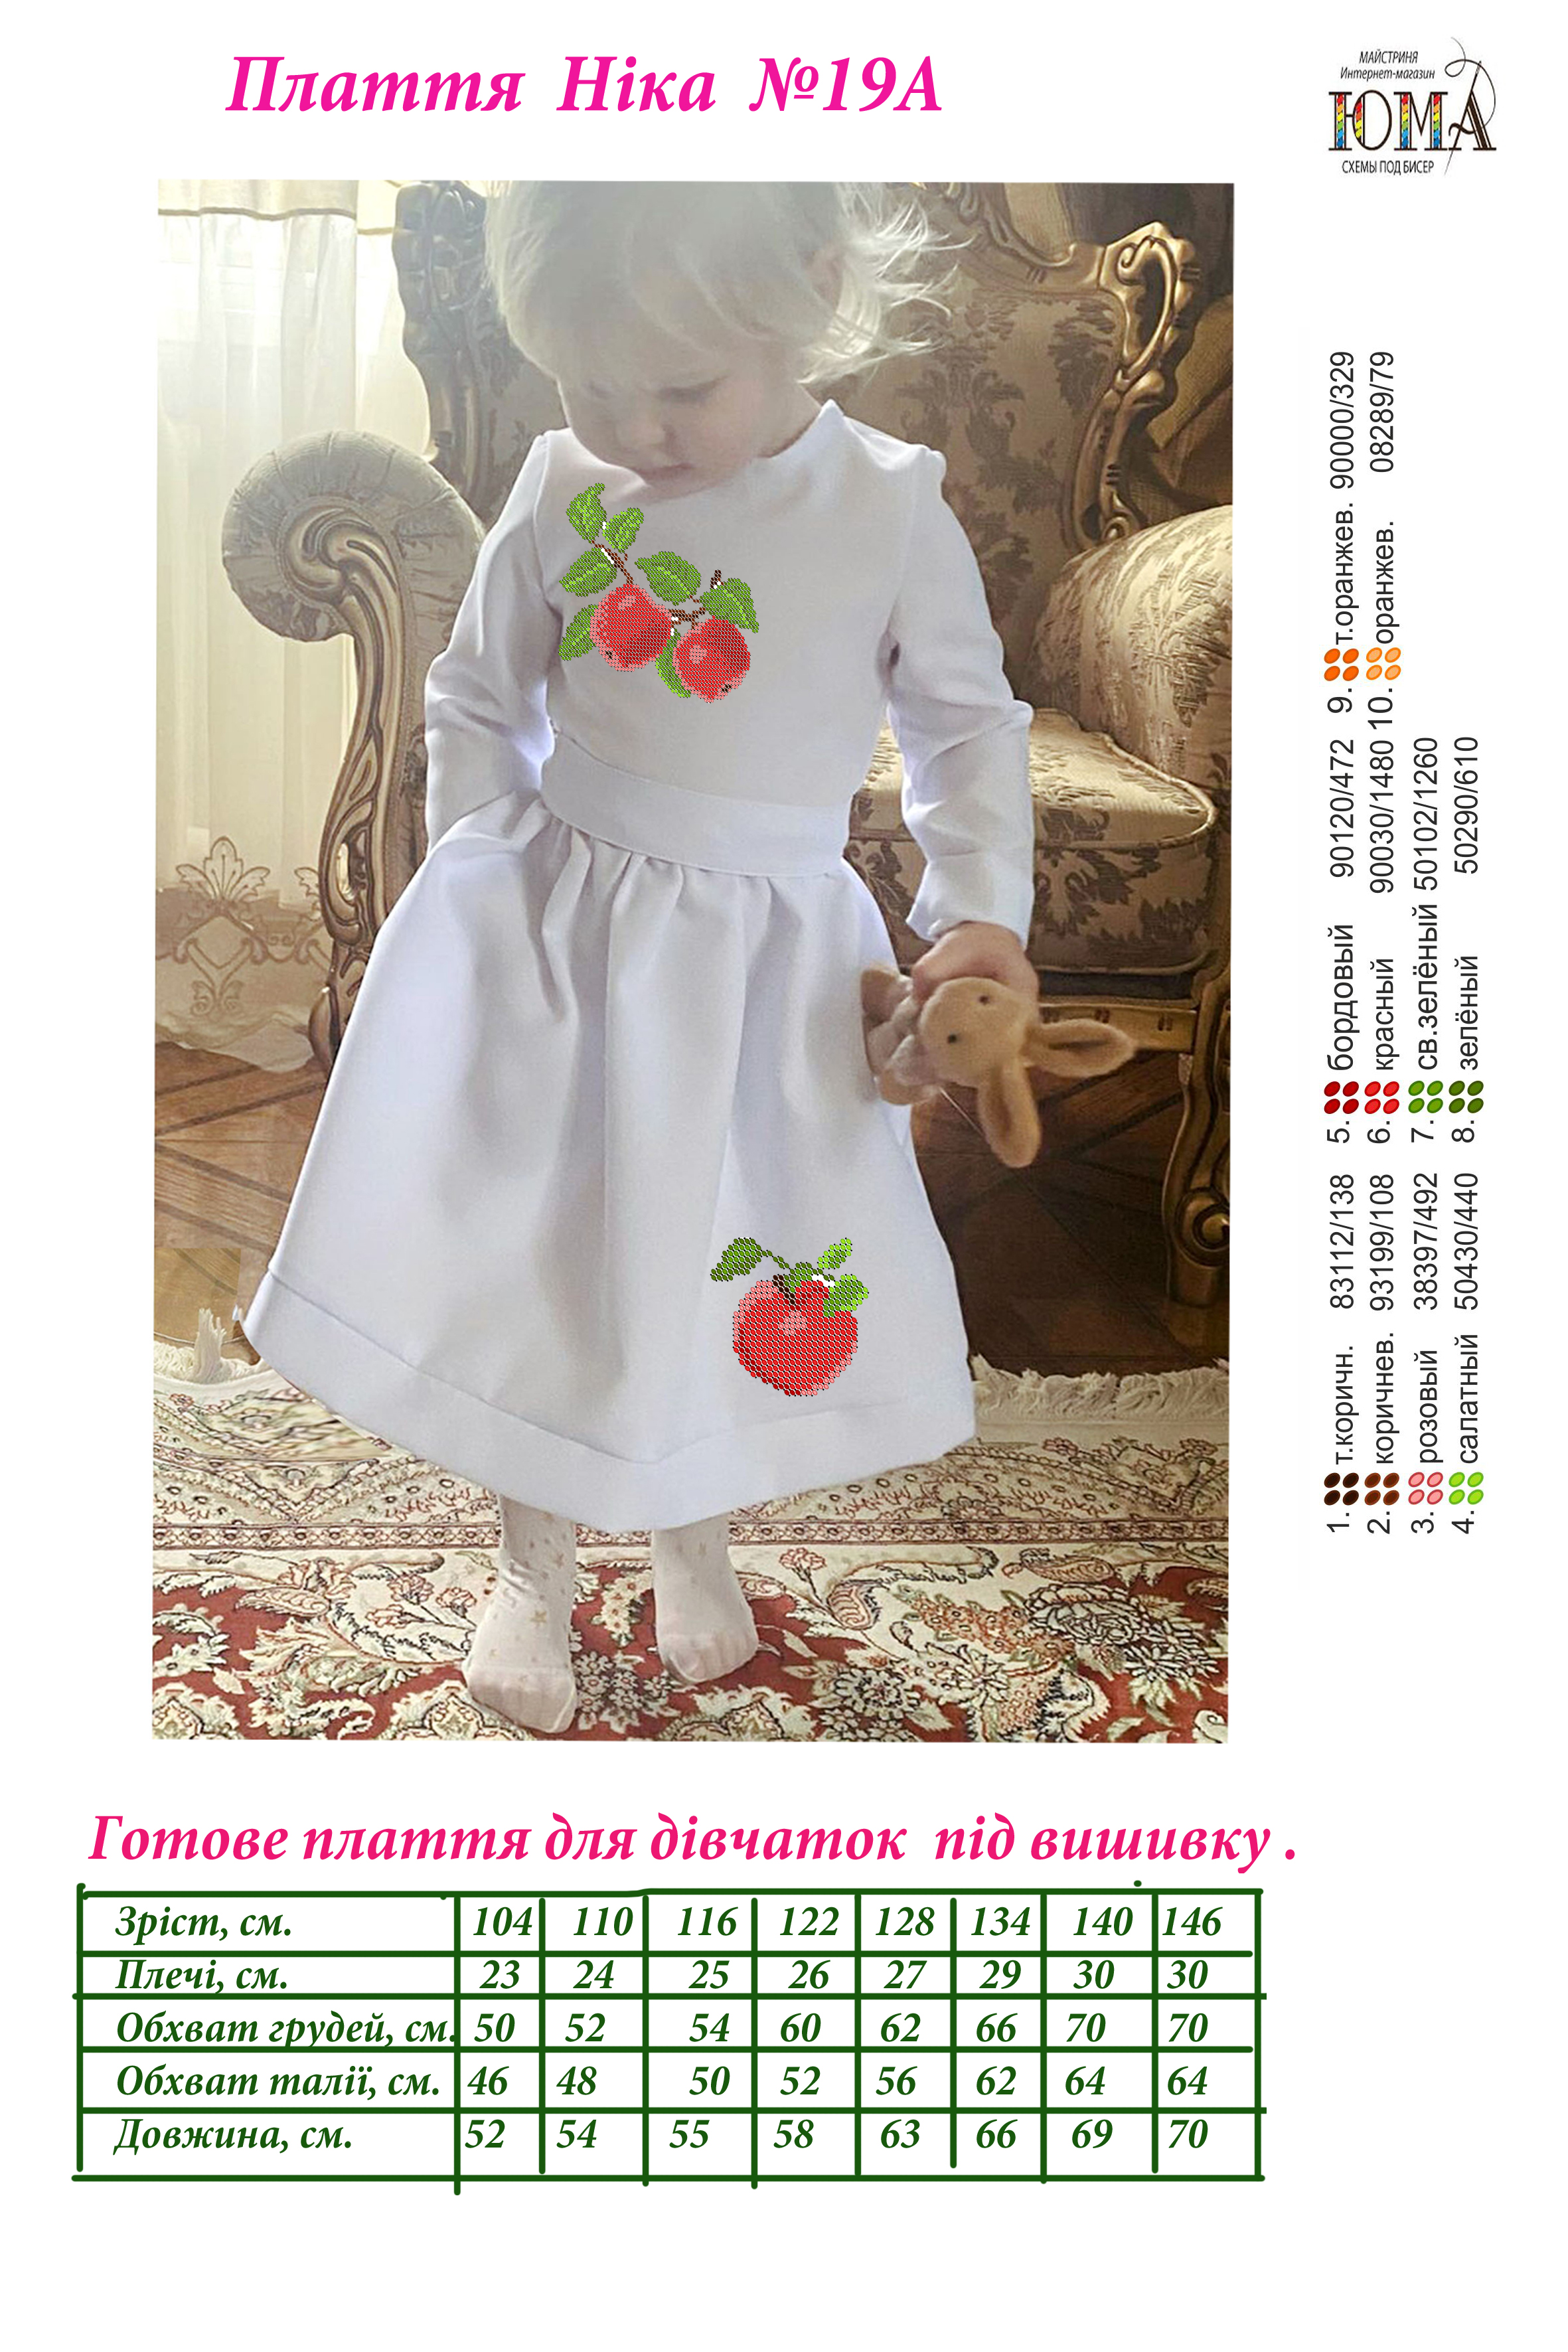 Пошита дитяча сукня під вишивку Ніка-19А